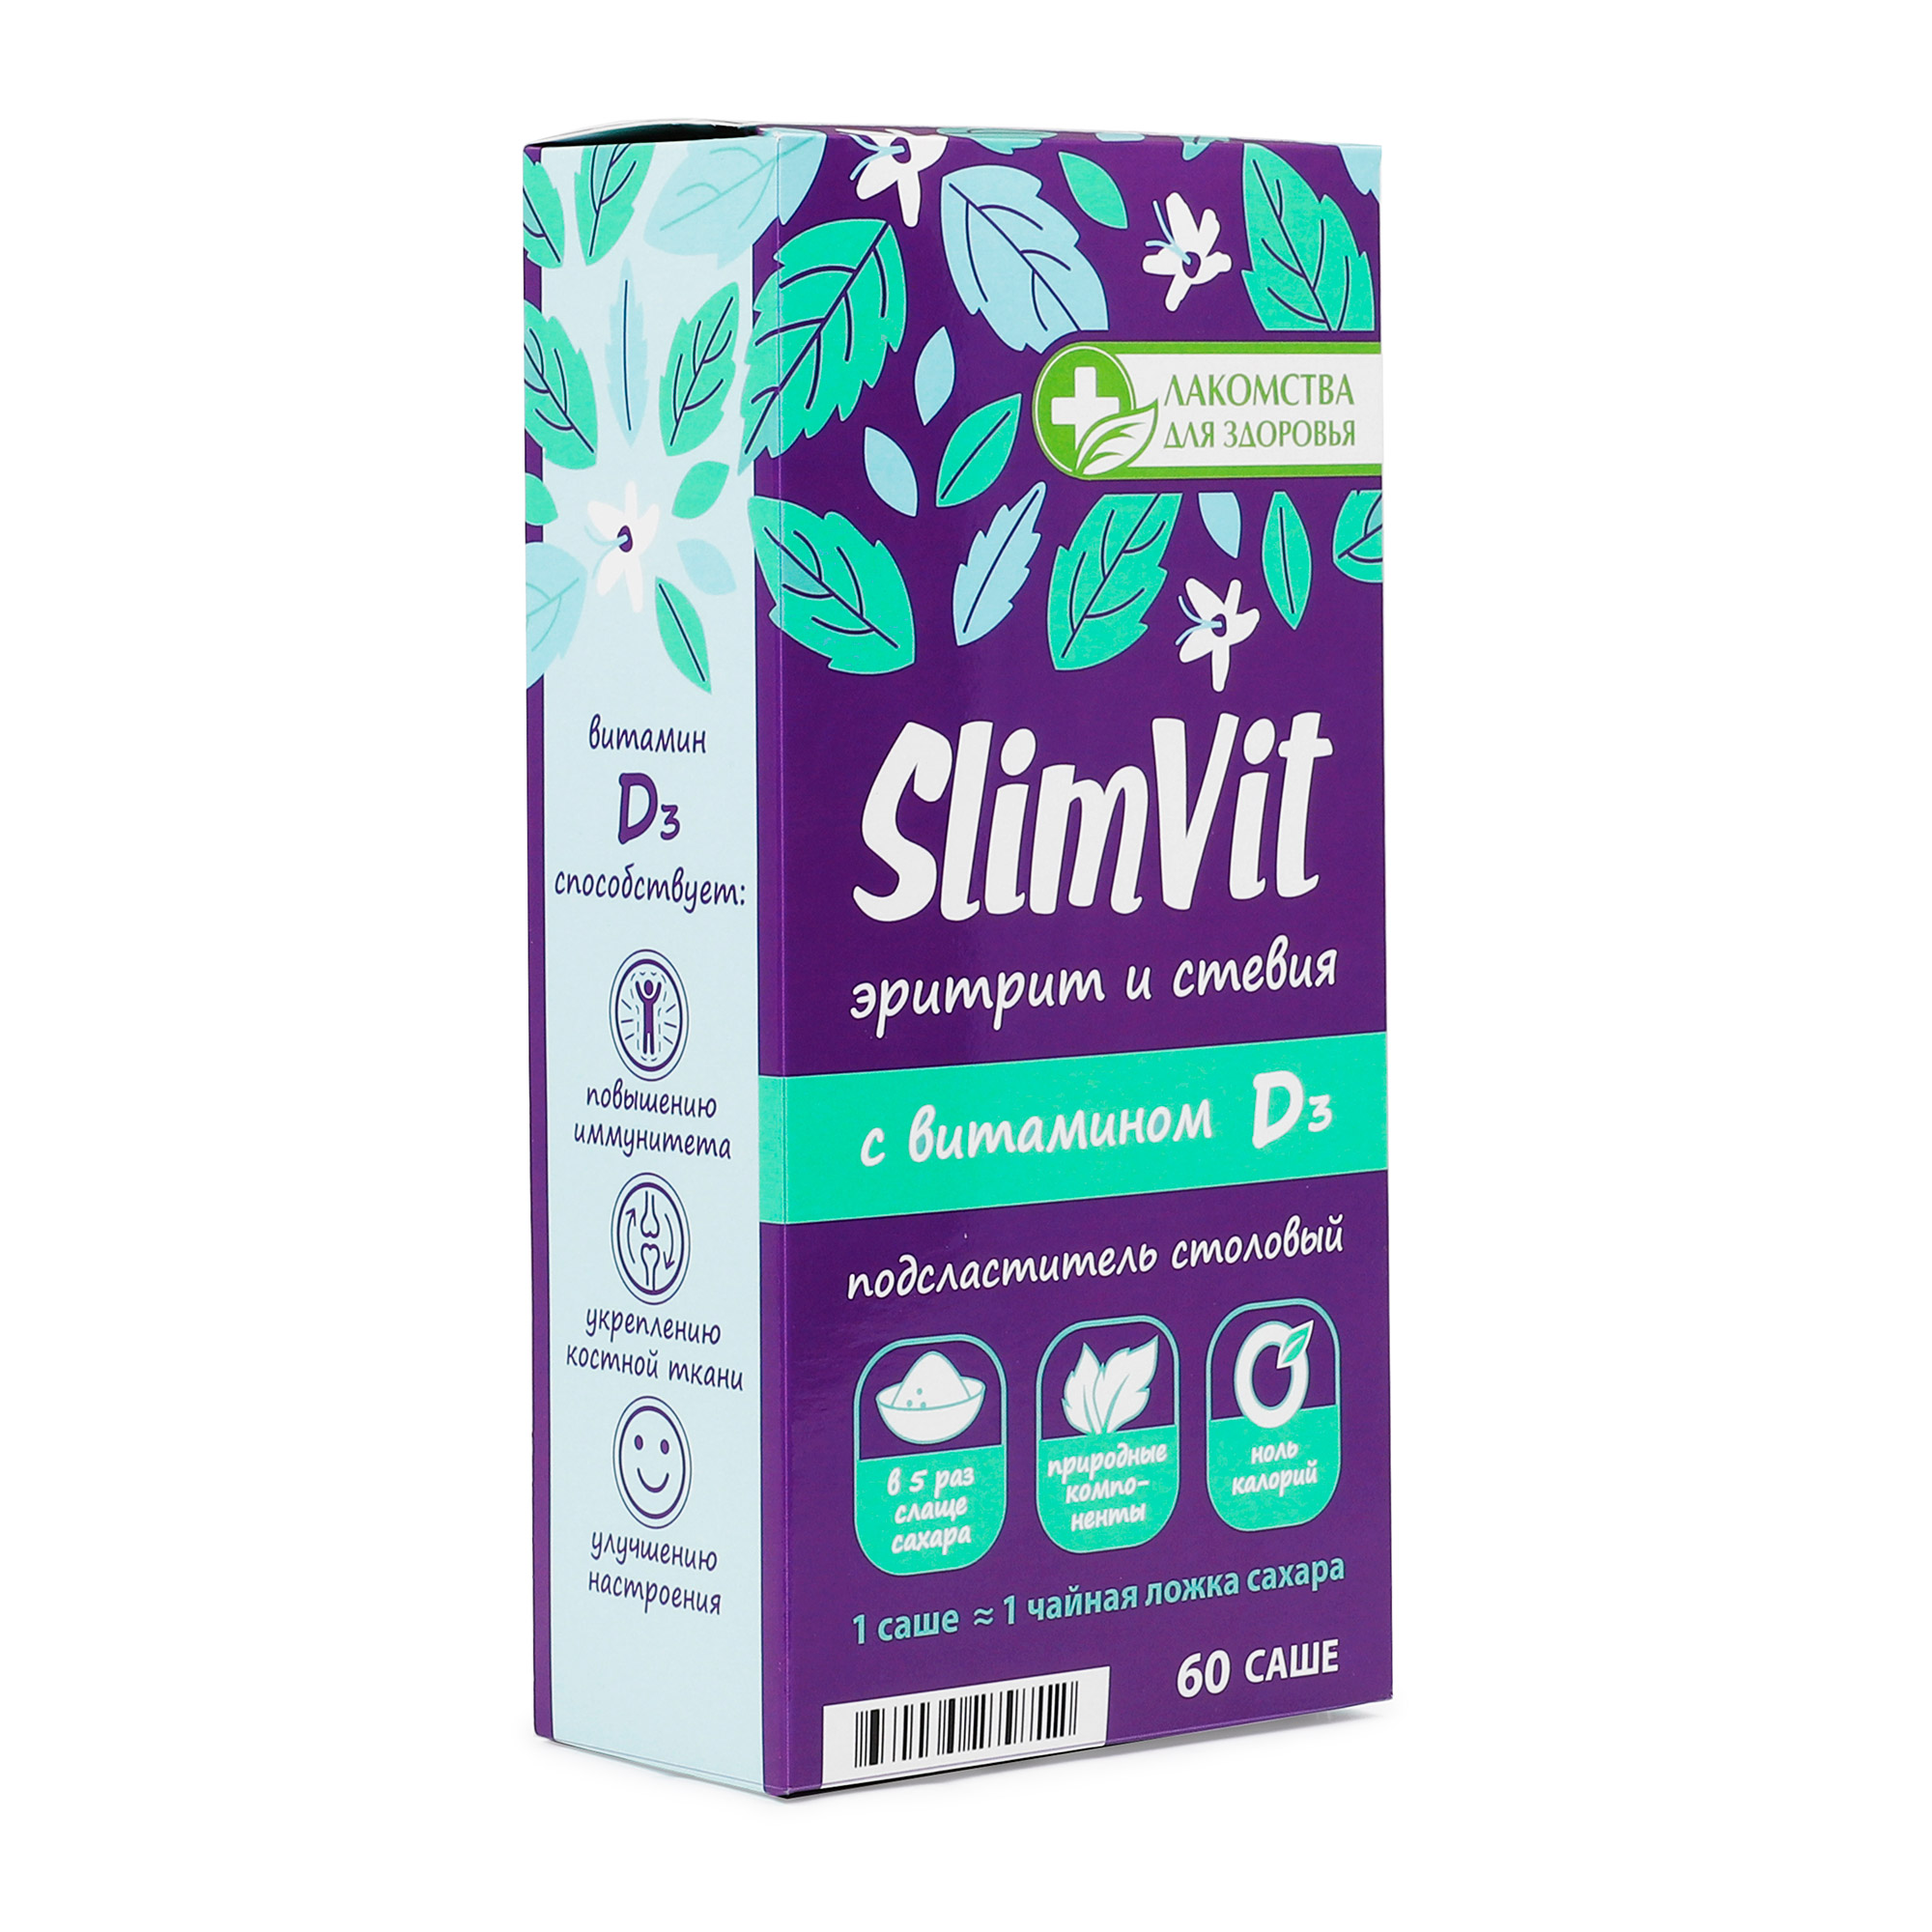 Подсластитель столовый Лакомства для здоровья SlimVit эритрит и стевия с витамином Dз 60 г столовый подсластитель fitparad эритрит 400 г